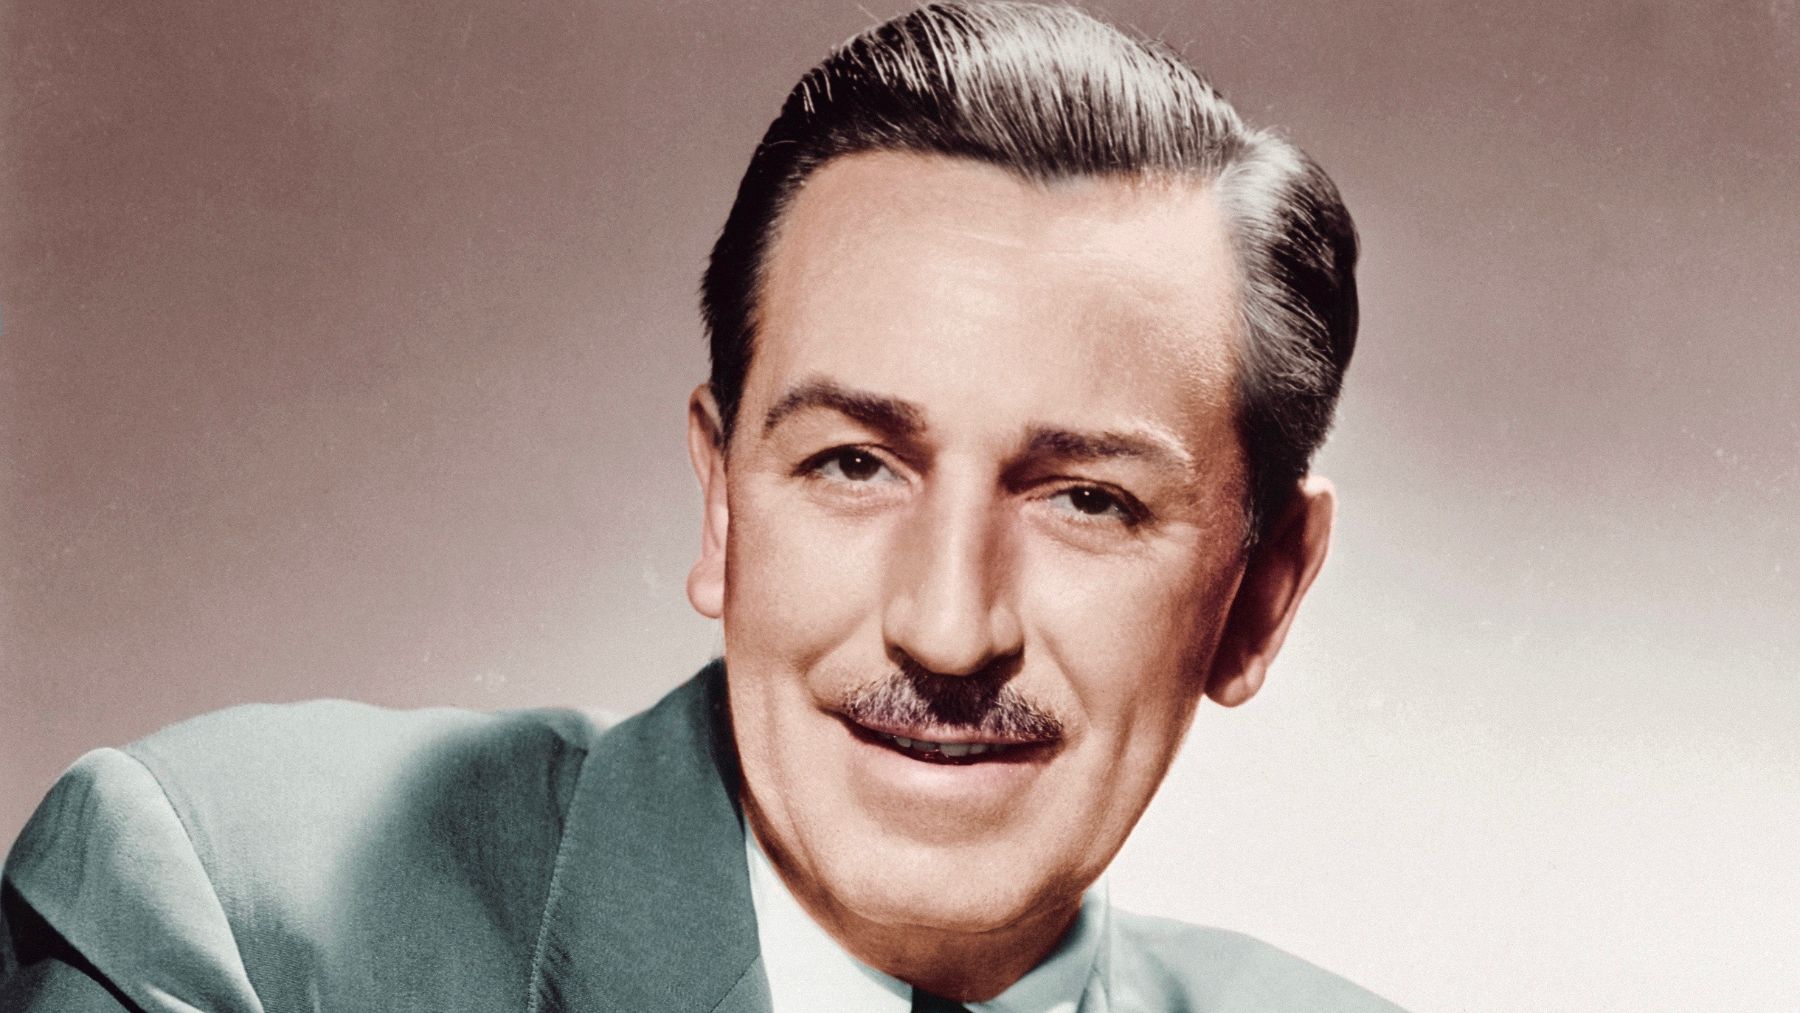 ¿Cuánto mide Walt Disney? Walt-disney-esta-congelado-es-verdad-o-mentira